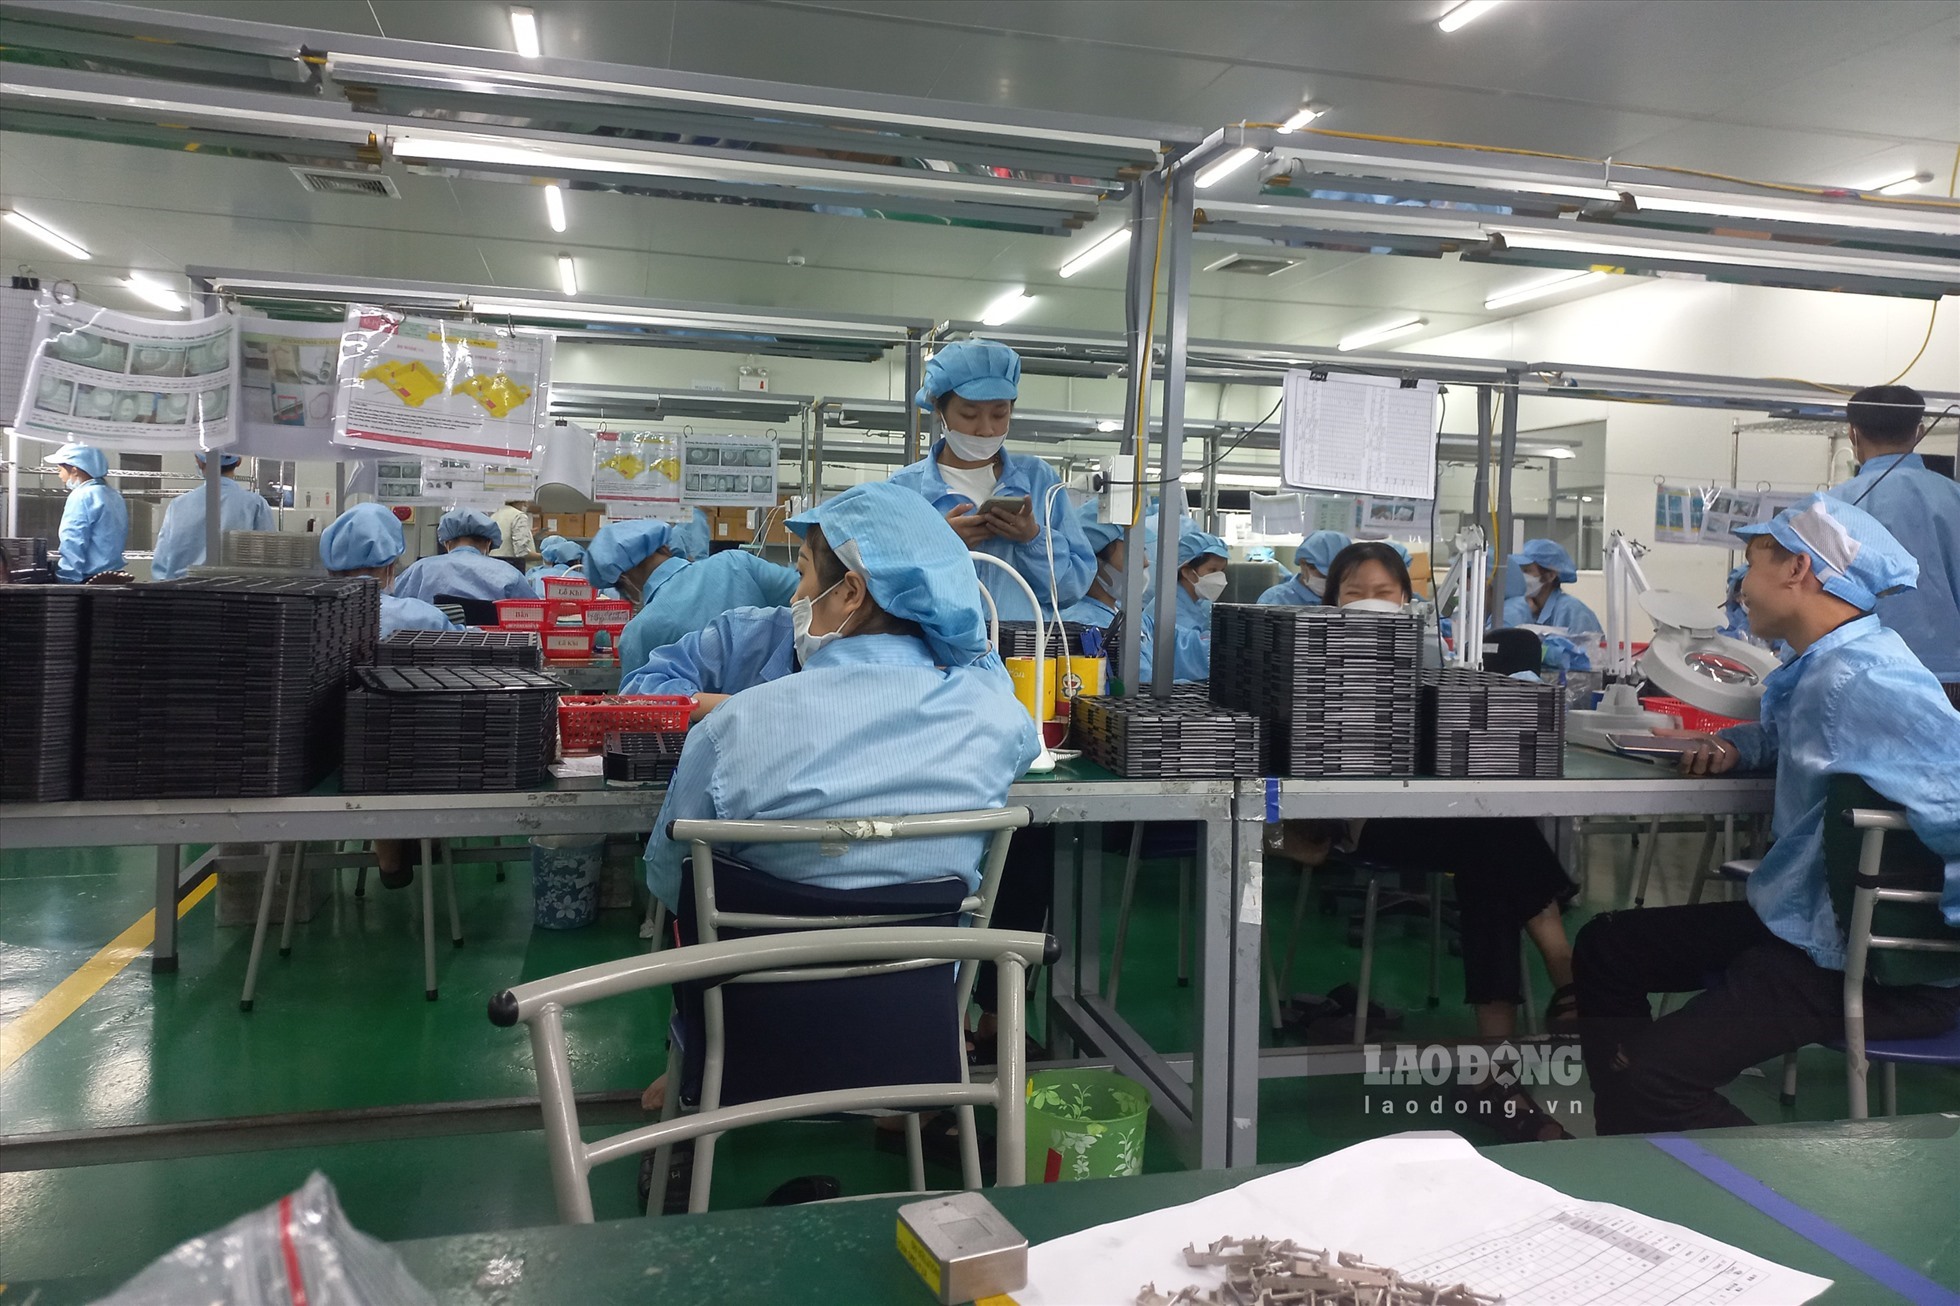 Không khó để bắt gặp những lao động dưới 18 tuổi nhan nhản làm việc trong các phân xưởng, nhà máy. Ảnh: NHÓM PV.